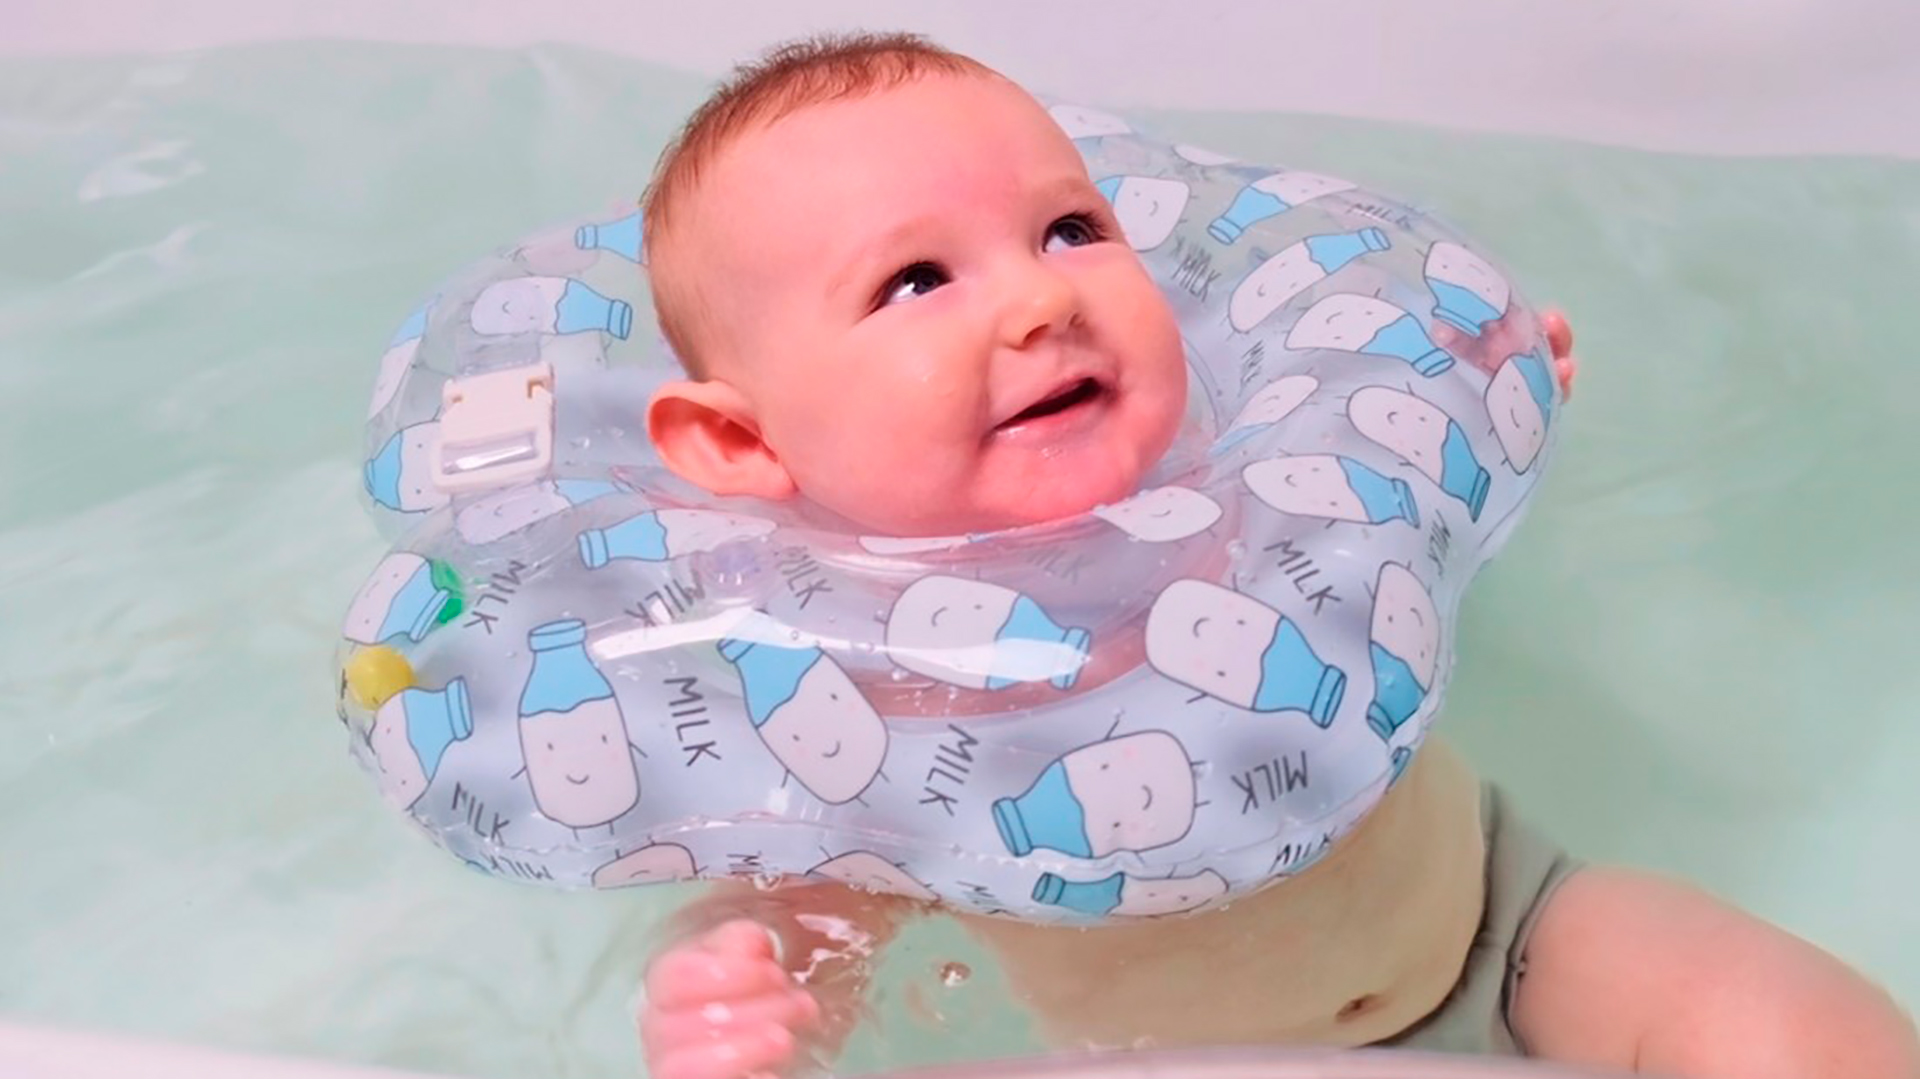 Hace escasos días, la FDA alertó sobre el uso de flotadores para cuello para bebés y sus consecuencias (FDA)